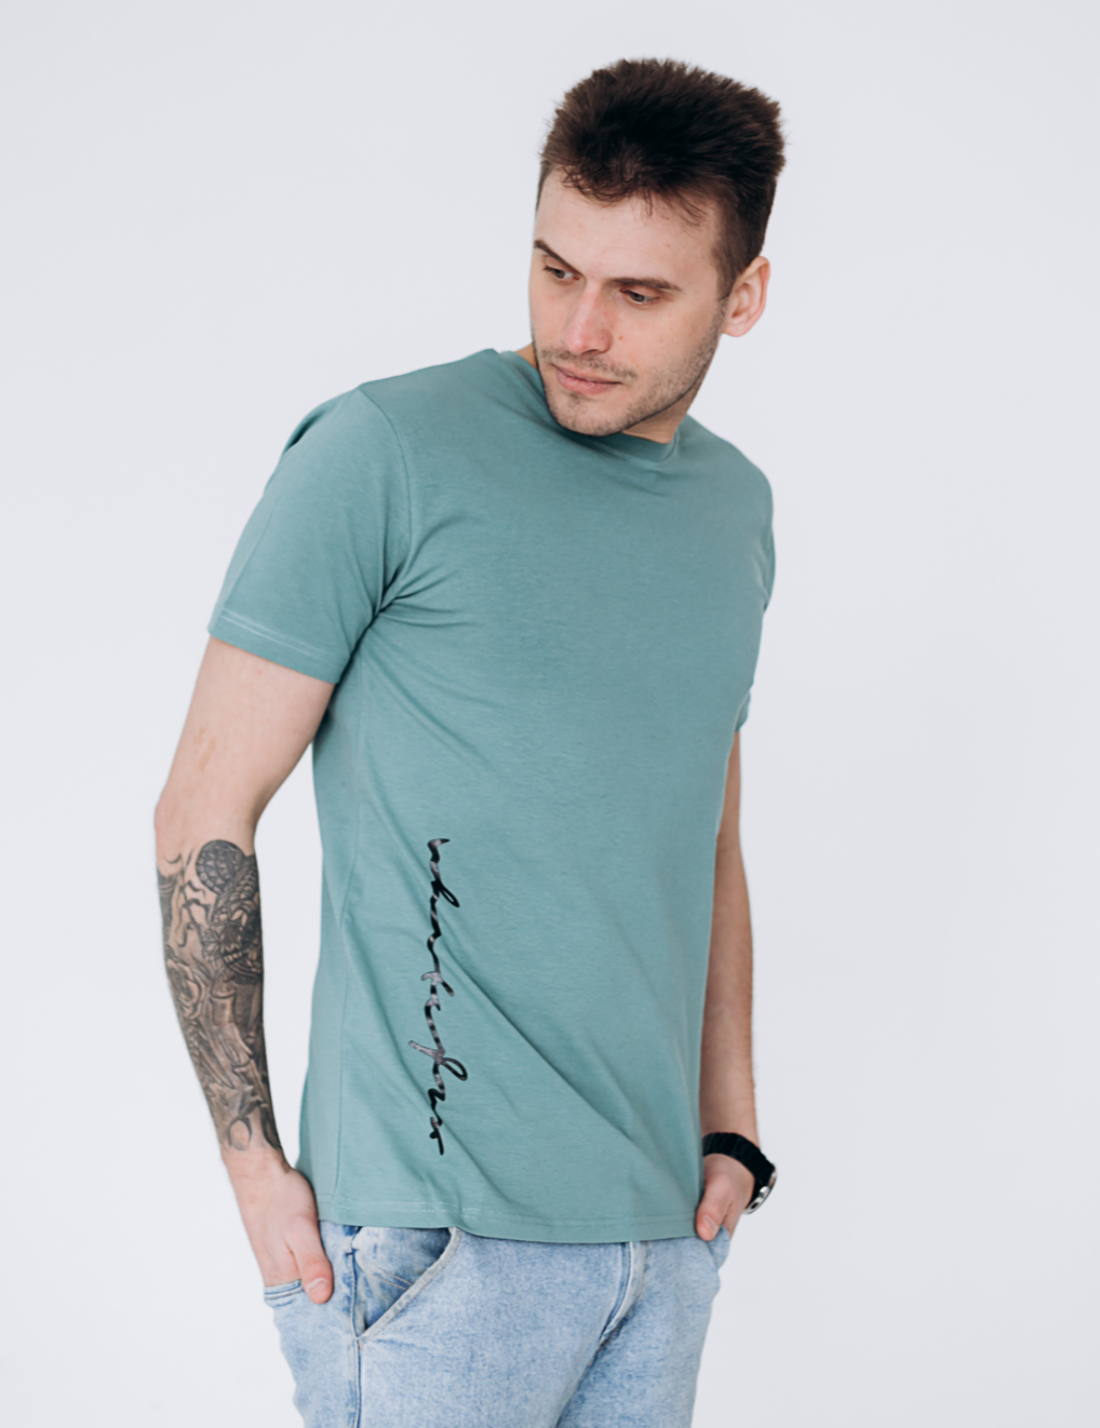 Мужская футболка с вертикальным принтом 40109